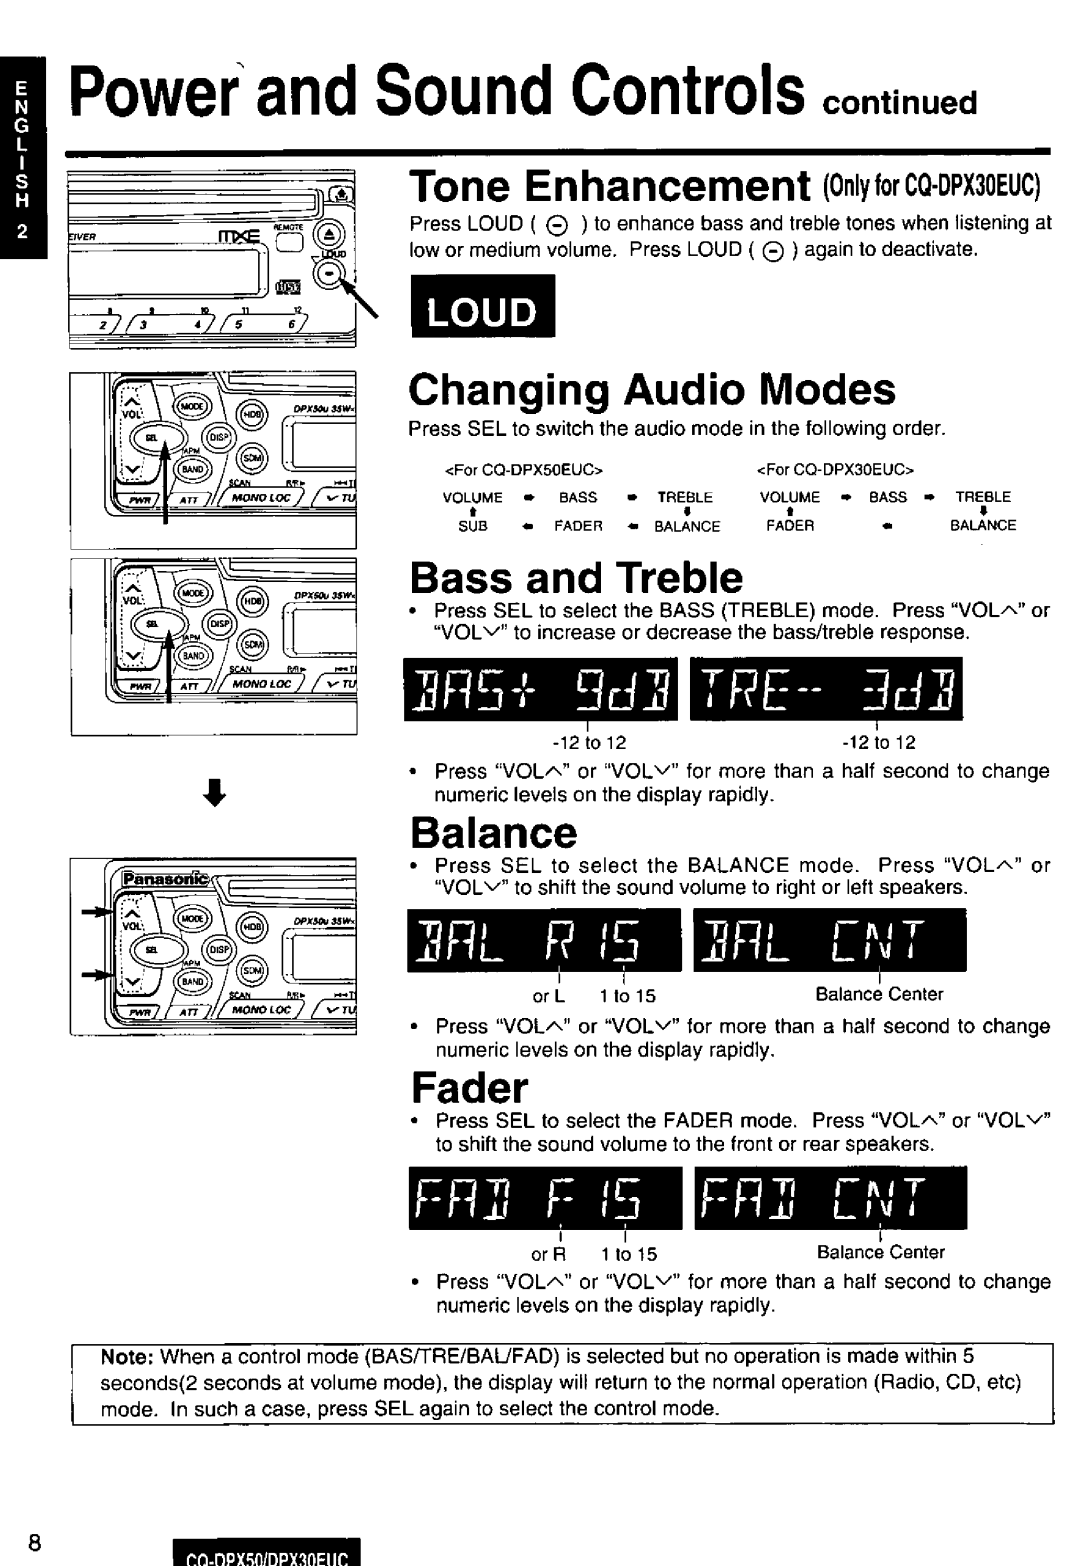 Panasonic CQ-DPX50, DPX30EUC manual 